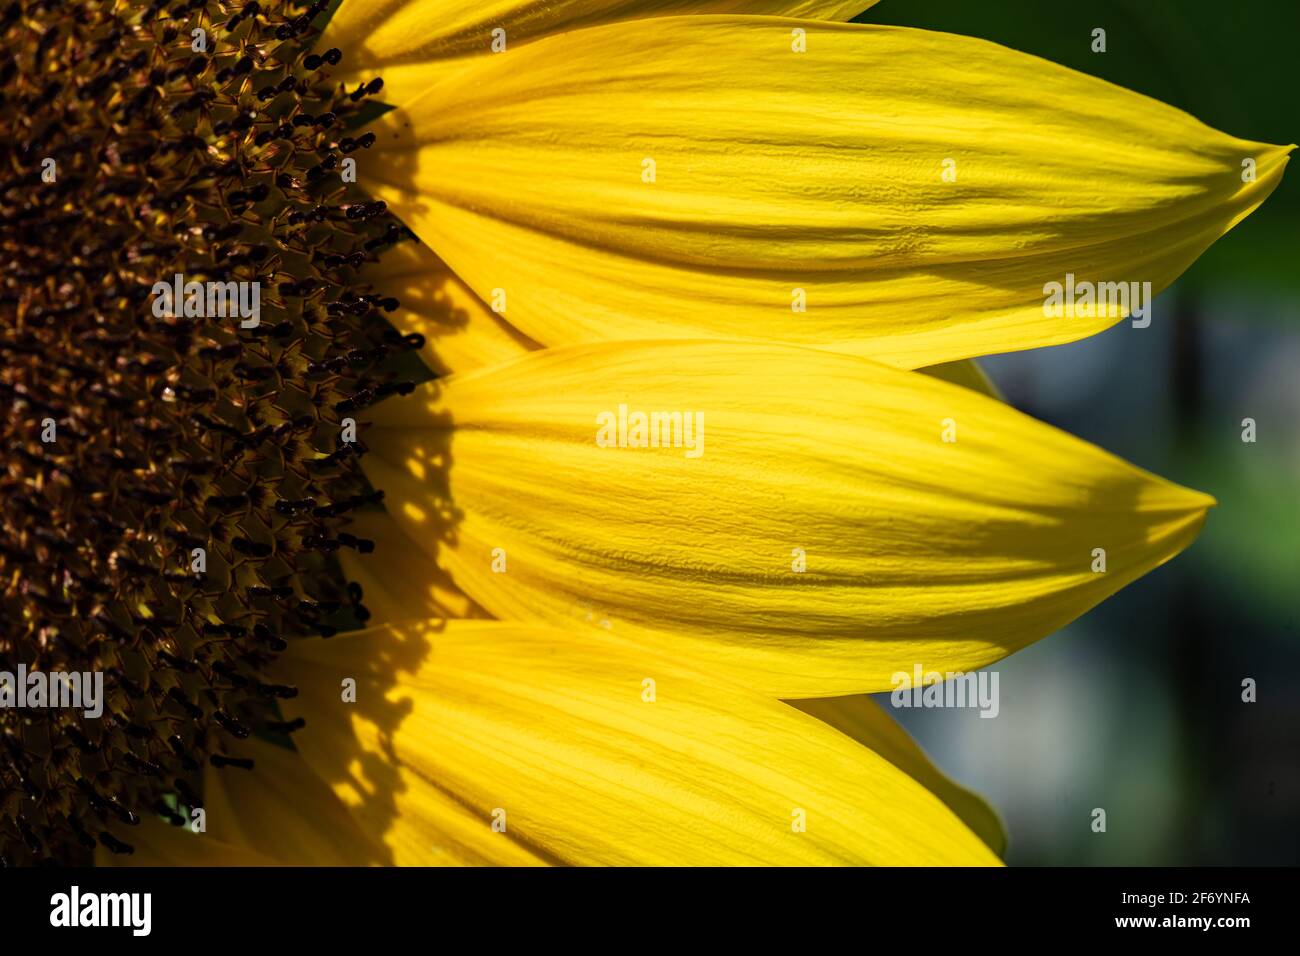 Abschnitt des Sonnenblumenkopfes, in dem Samen und Blütenblätter ausgehen Nach rechts Stockfoto